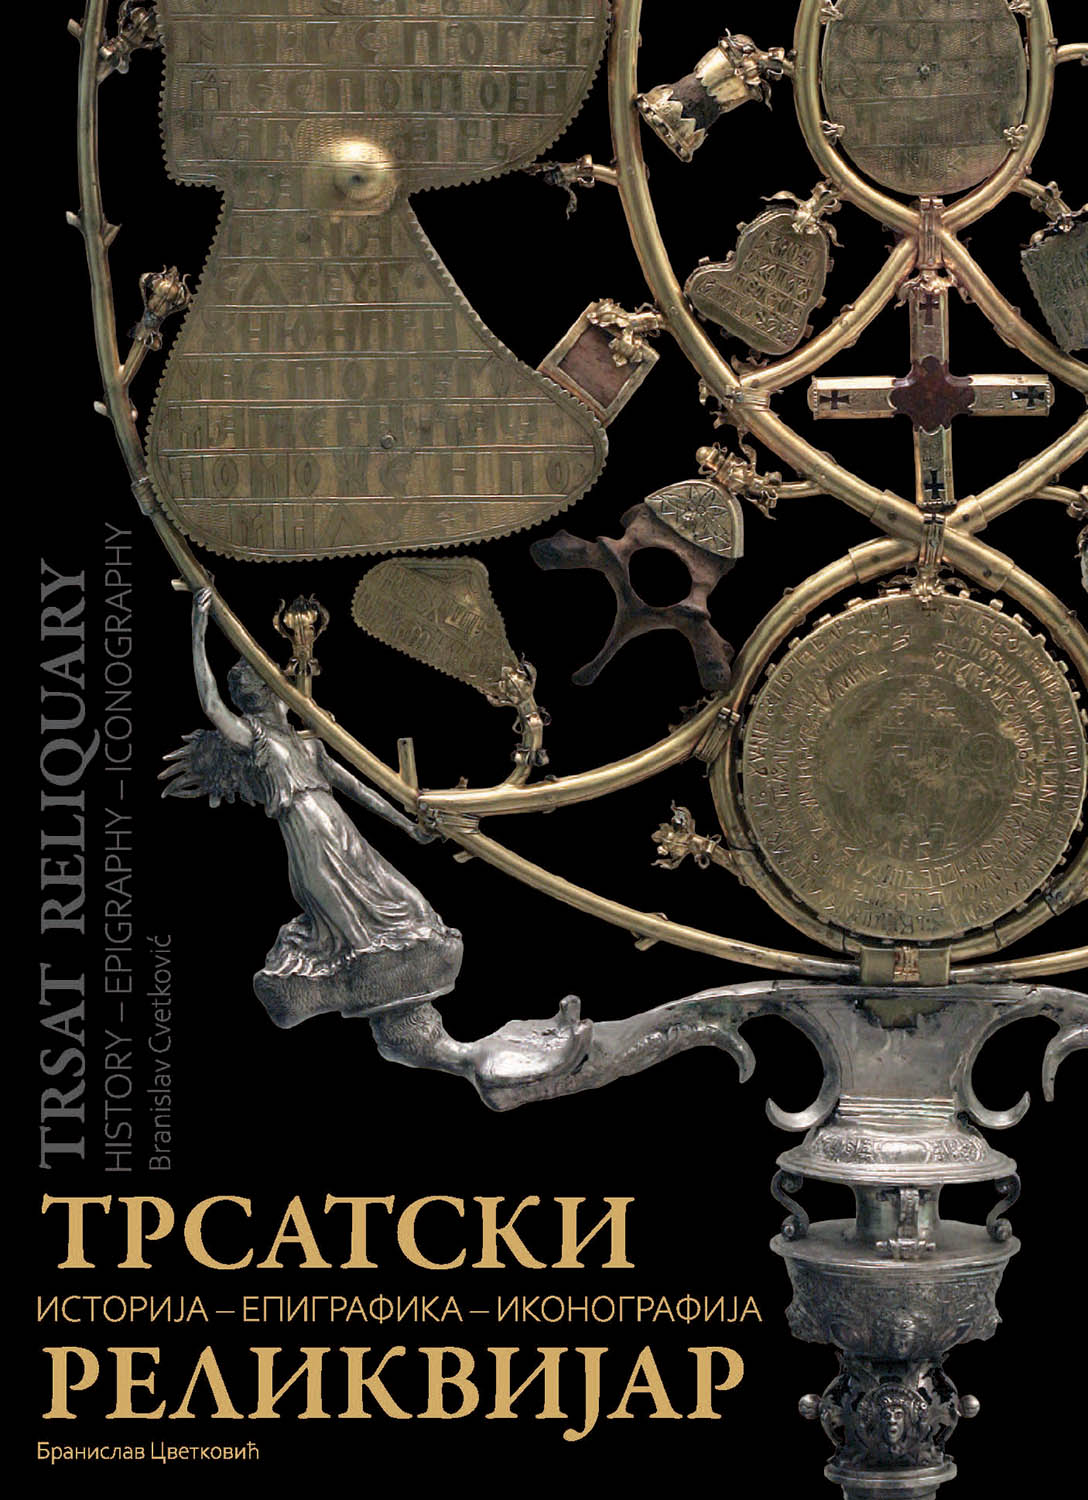 Трсатски реликвијар: историја – епиграфика – иконографија